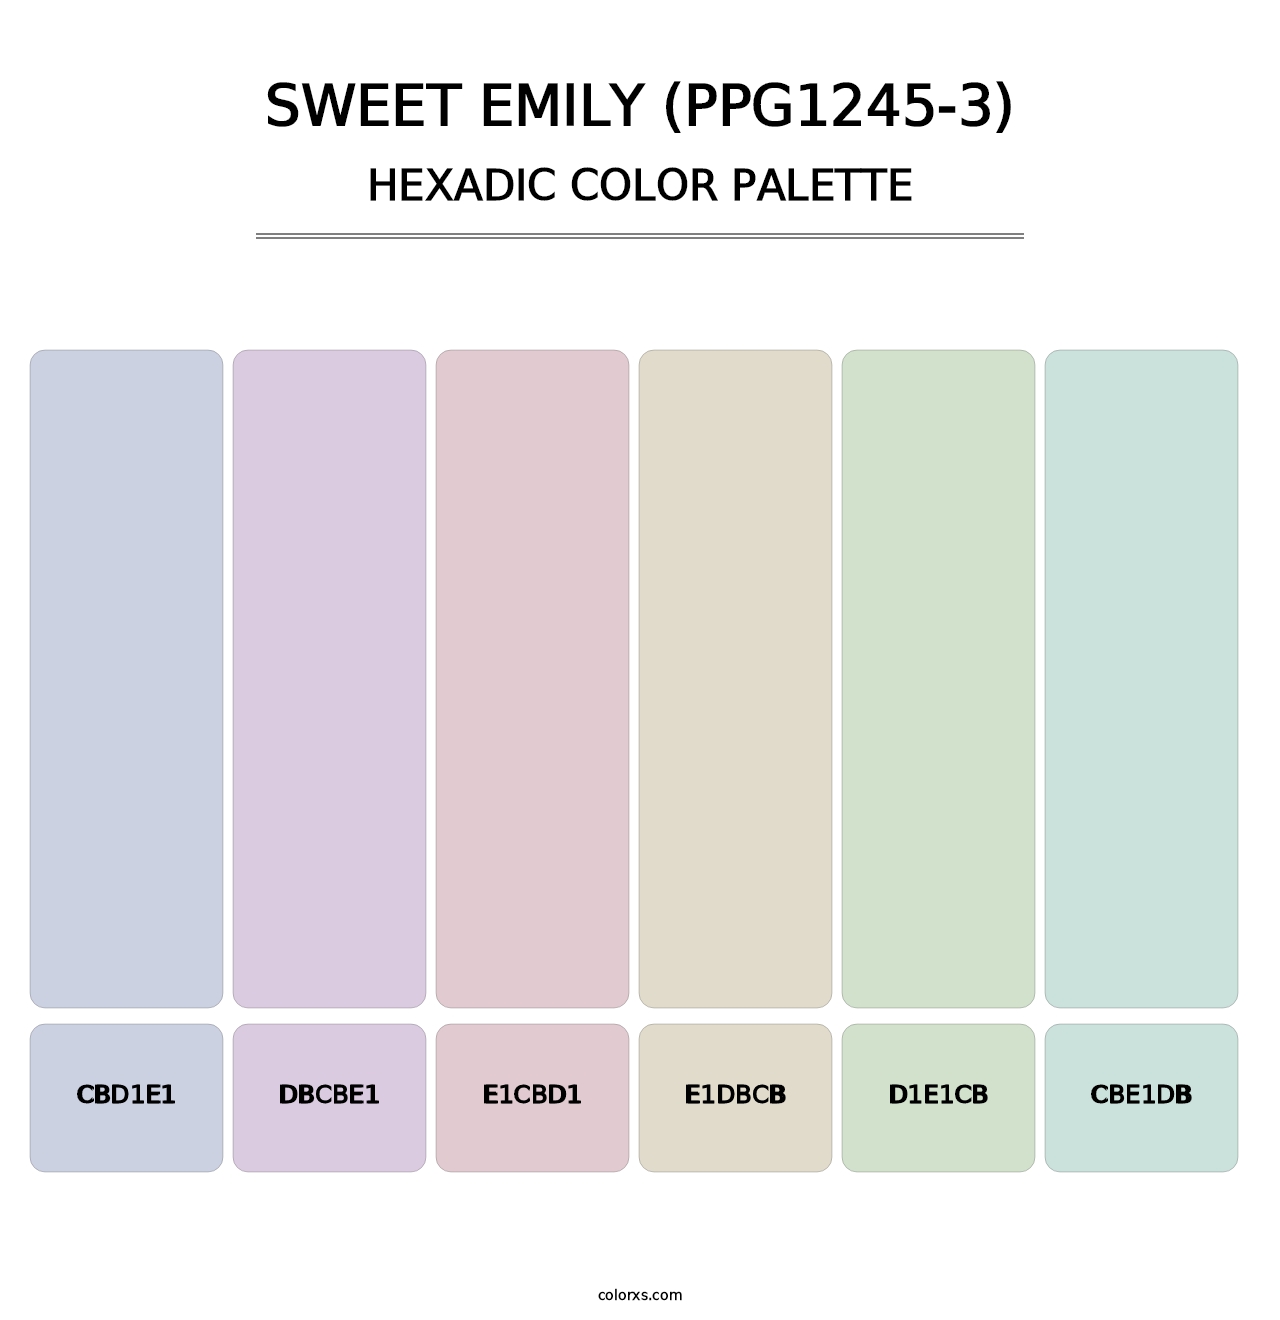 Sweet Emily (PPG1245-3) - Hexadic Color Palette